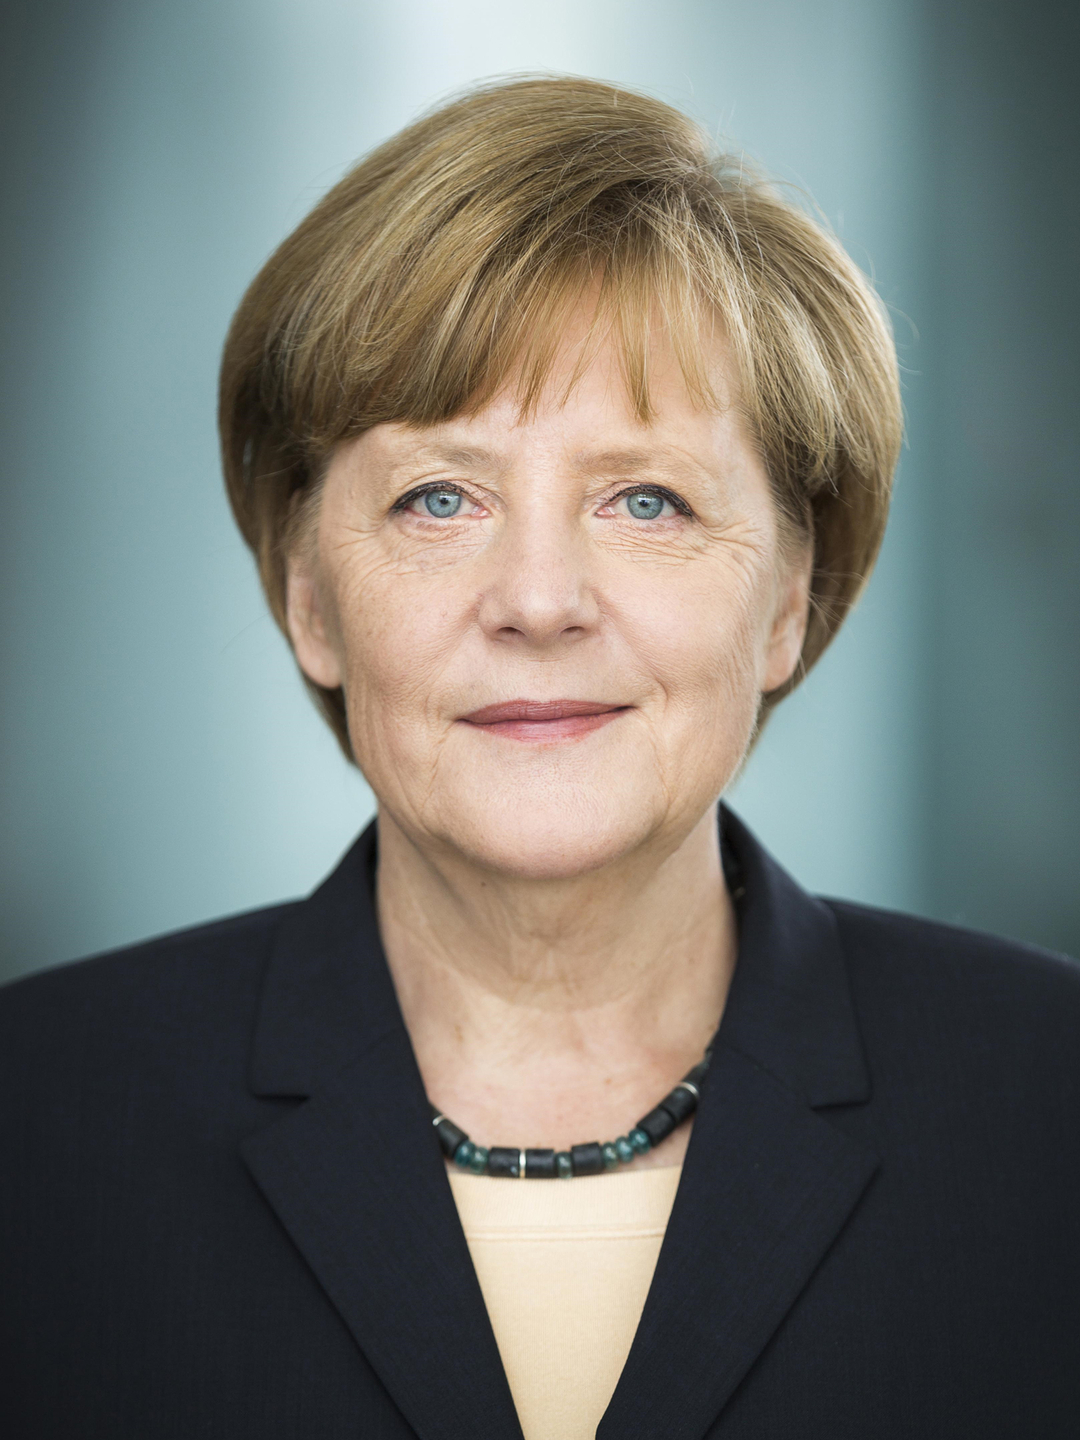 Angela Merkel main achievements